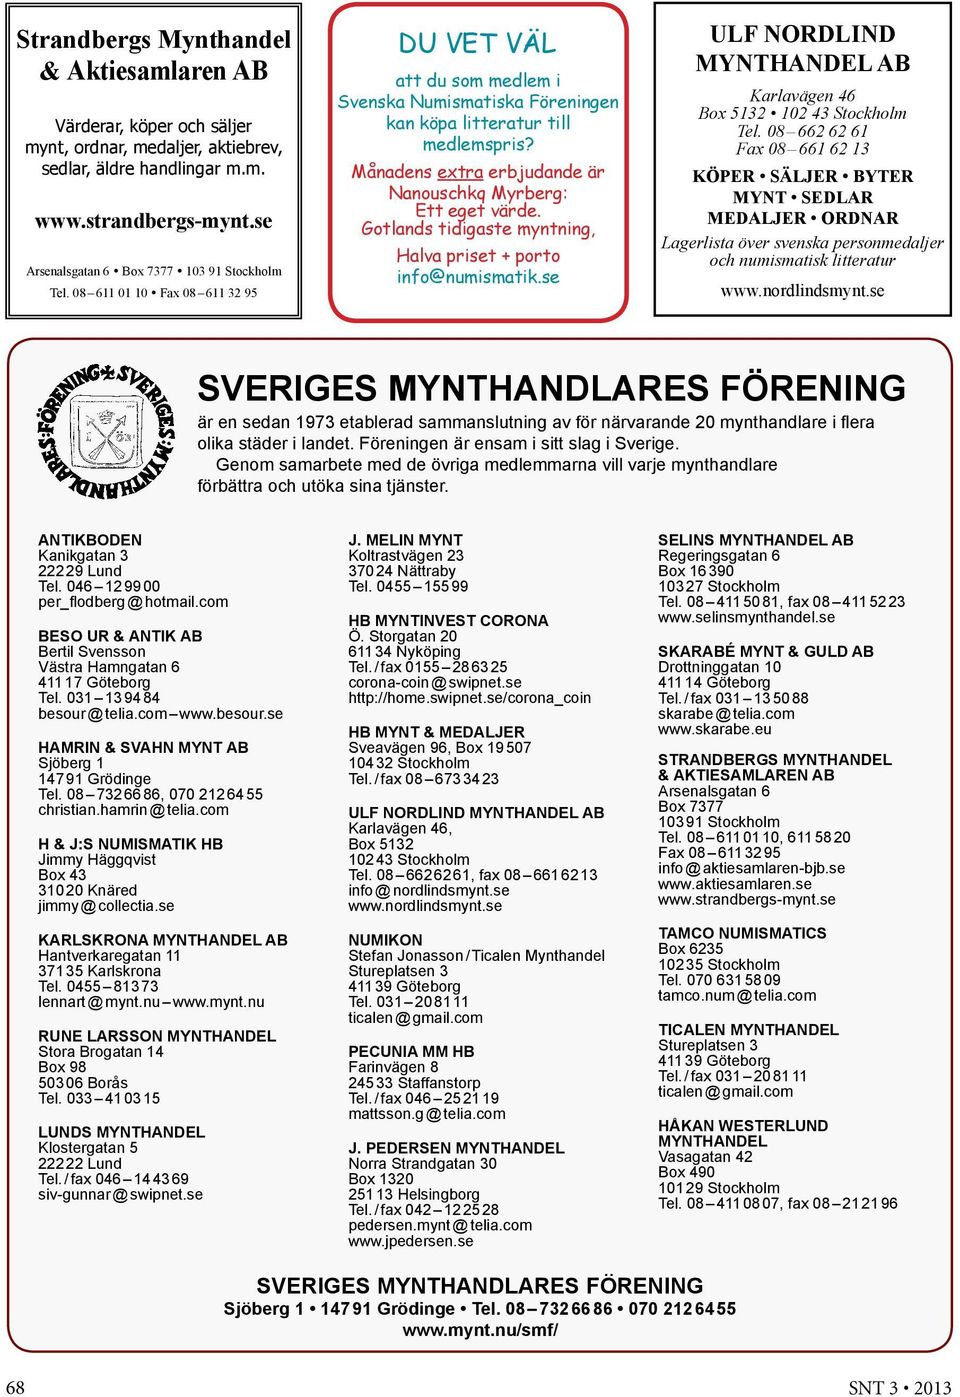 Månadens extra erbjudande är Nanouschkq Myrberg: Ett eget värde. Gotlands tidigaste myntning, Halva priset + porto info@numismatik.